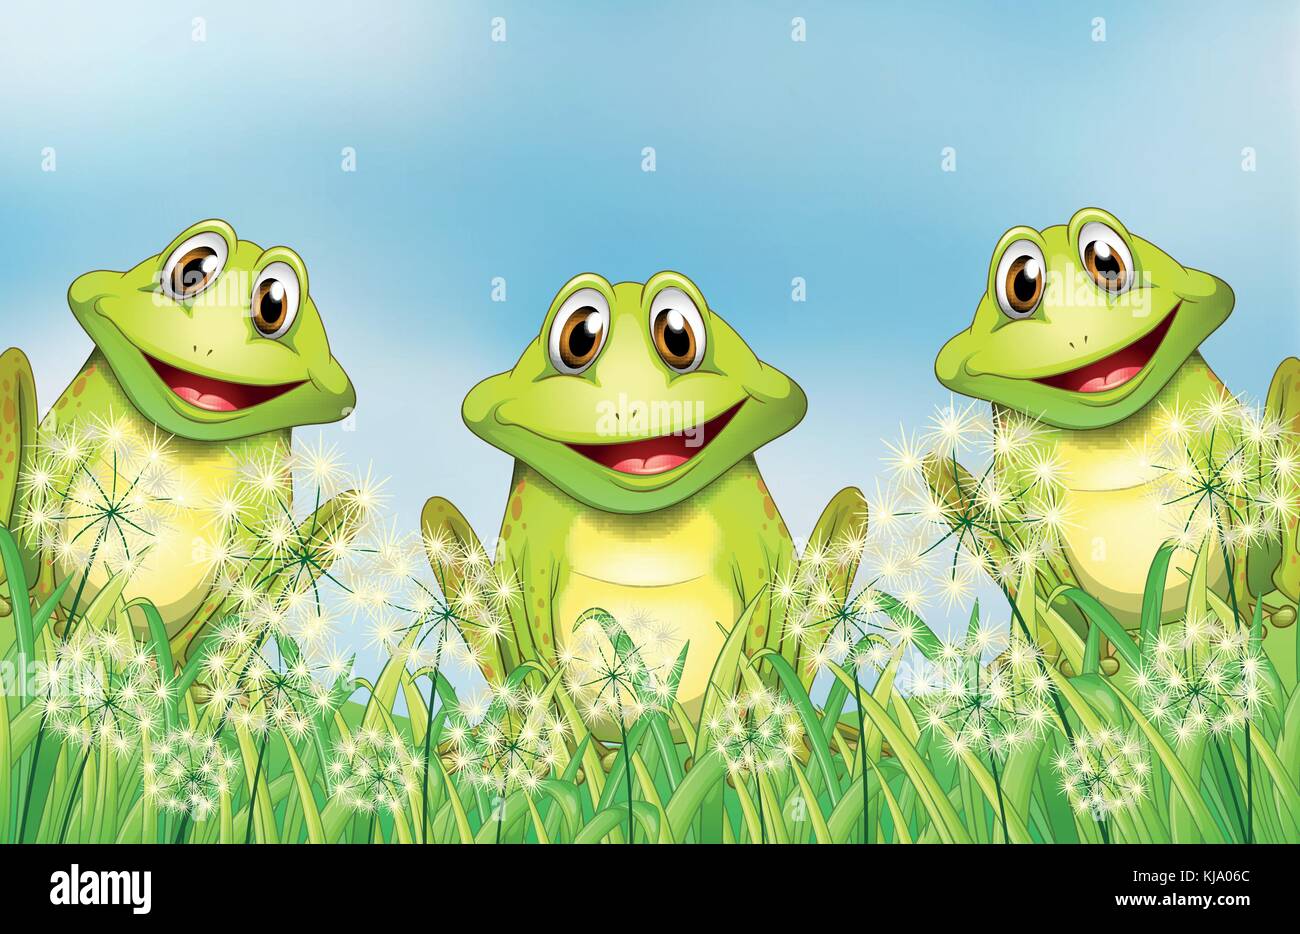 Ilustración de las Tres ranas en el jardín Ilustración del Vector